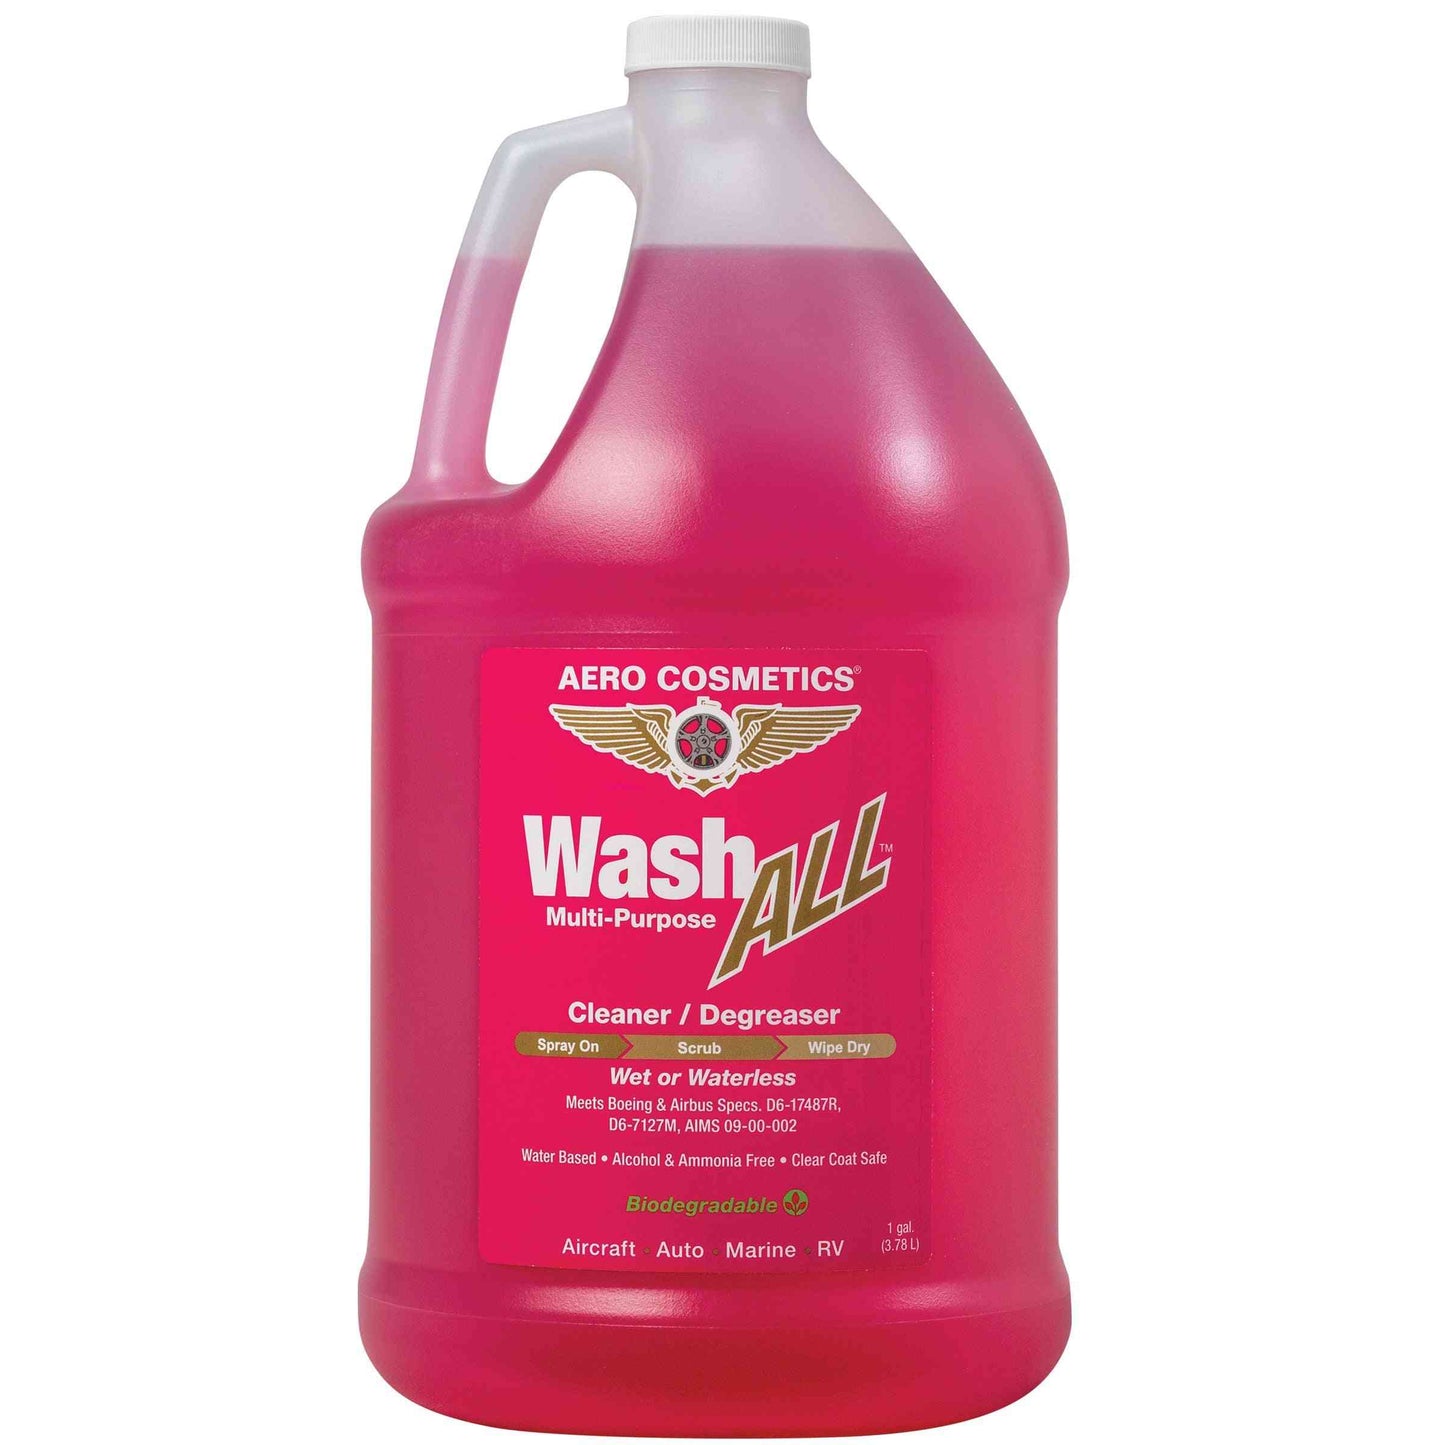 Wash ALL Degreaser 1 Gallon, Aero Cosmetics, aircraft, car, rv, boat, motorcycle, waterless wash 